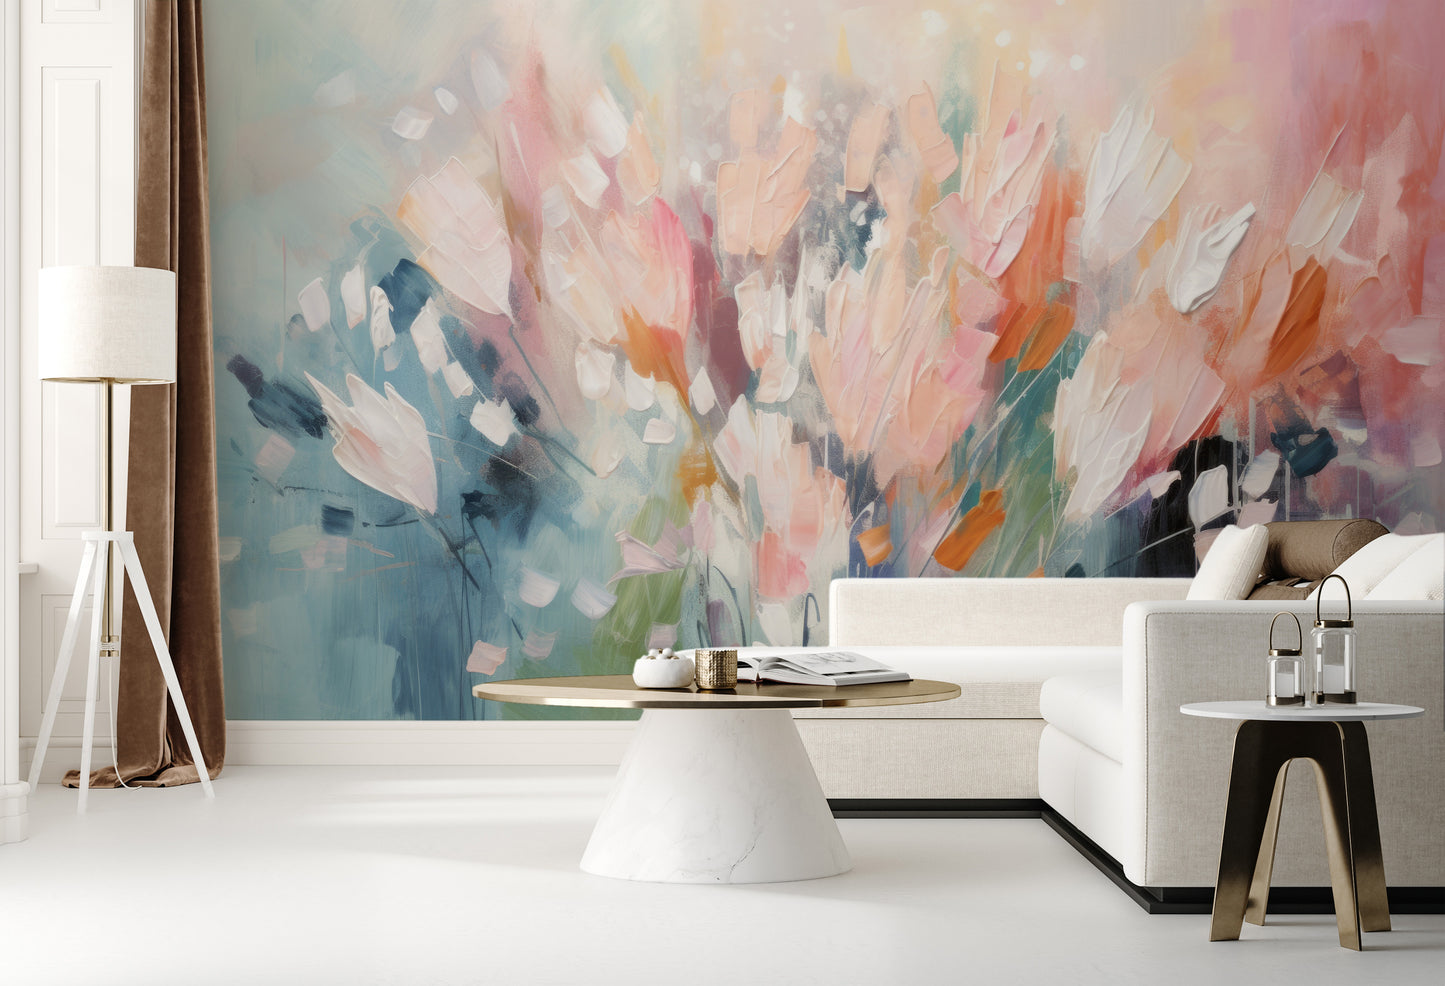 Fototapeta artystyczna o nazwie Ethereal Floral Canvas pokazana w aranżacji wnętrza.